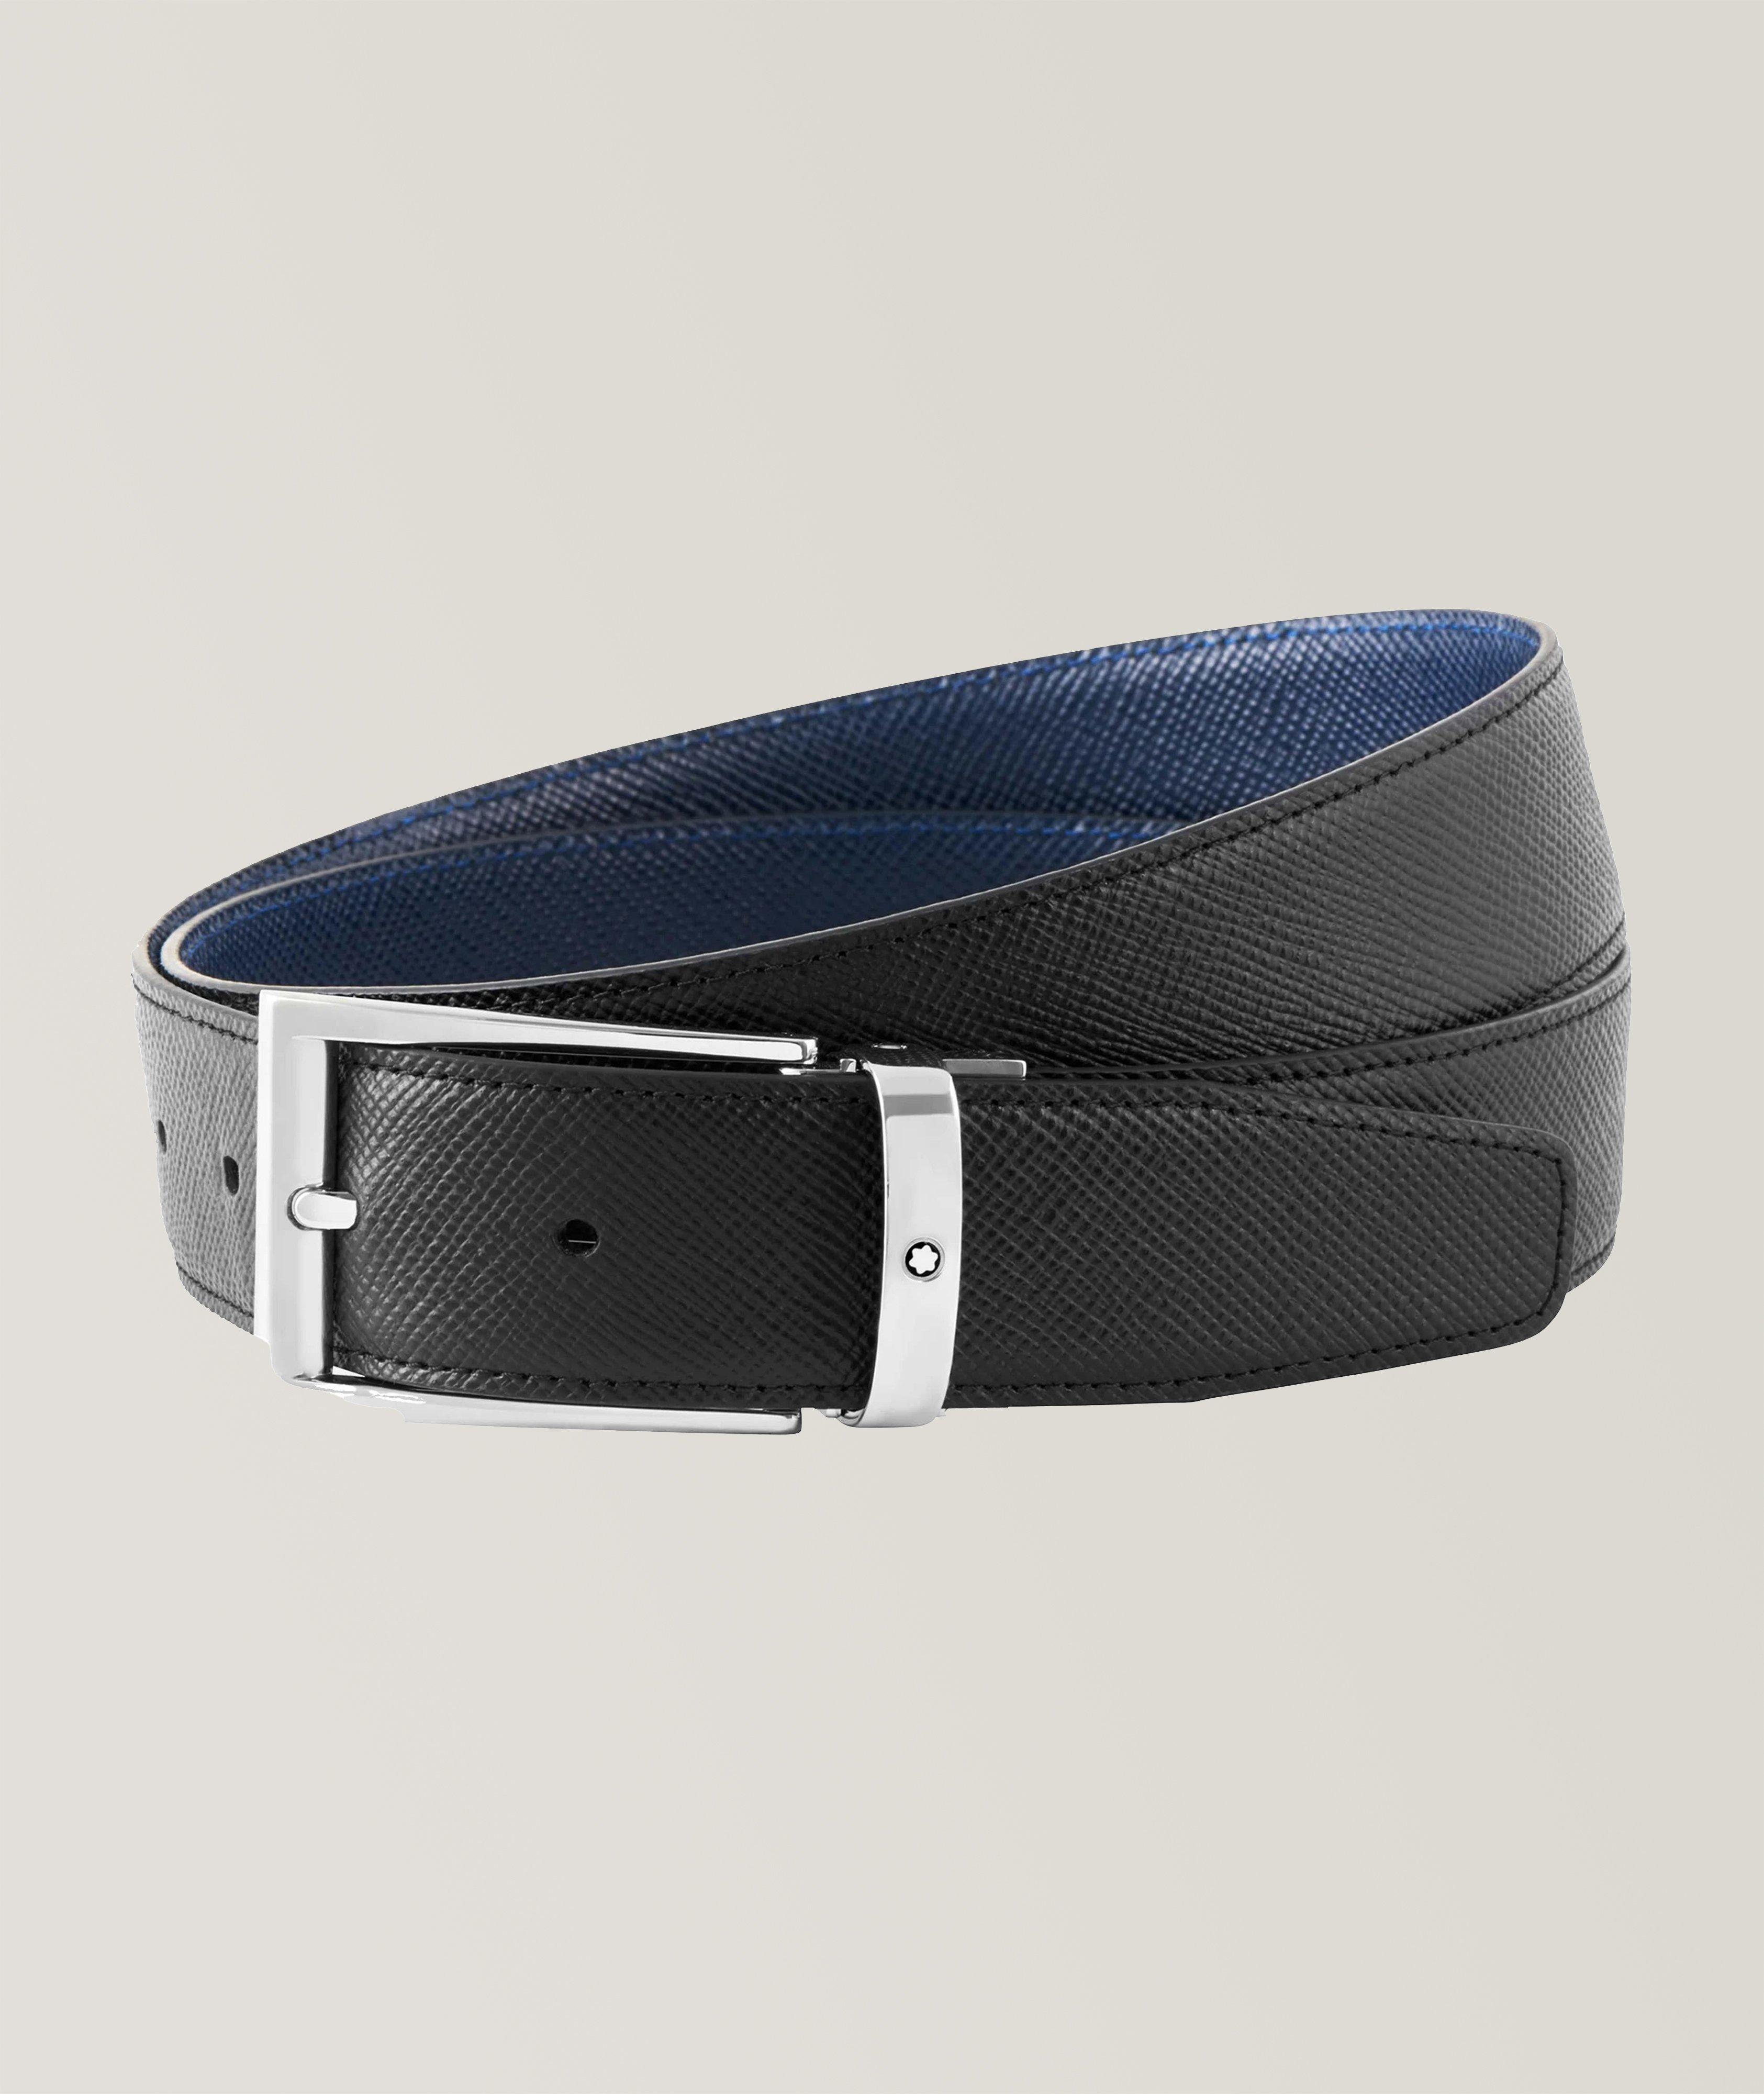 Harry Rosen Reversible Leather Belt. 1